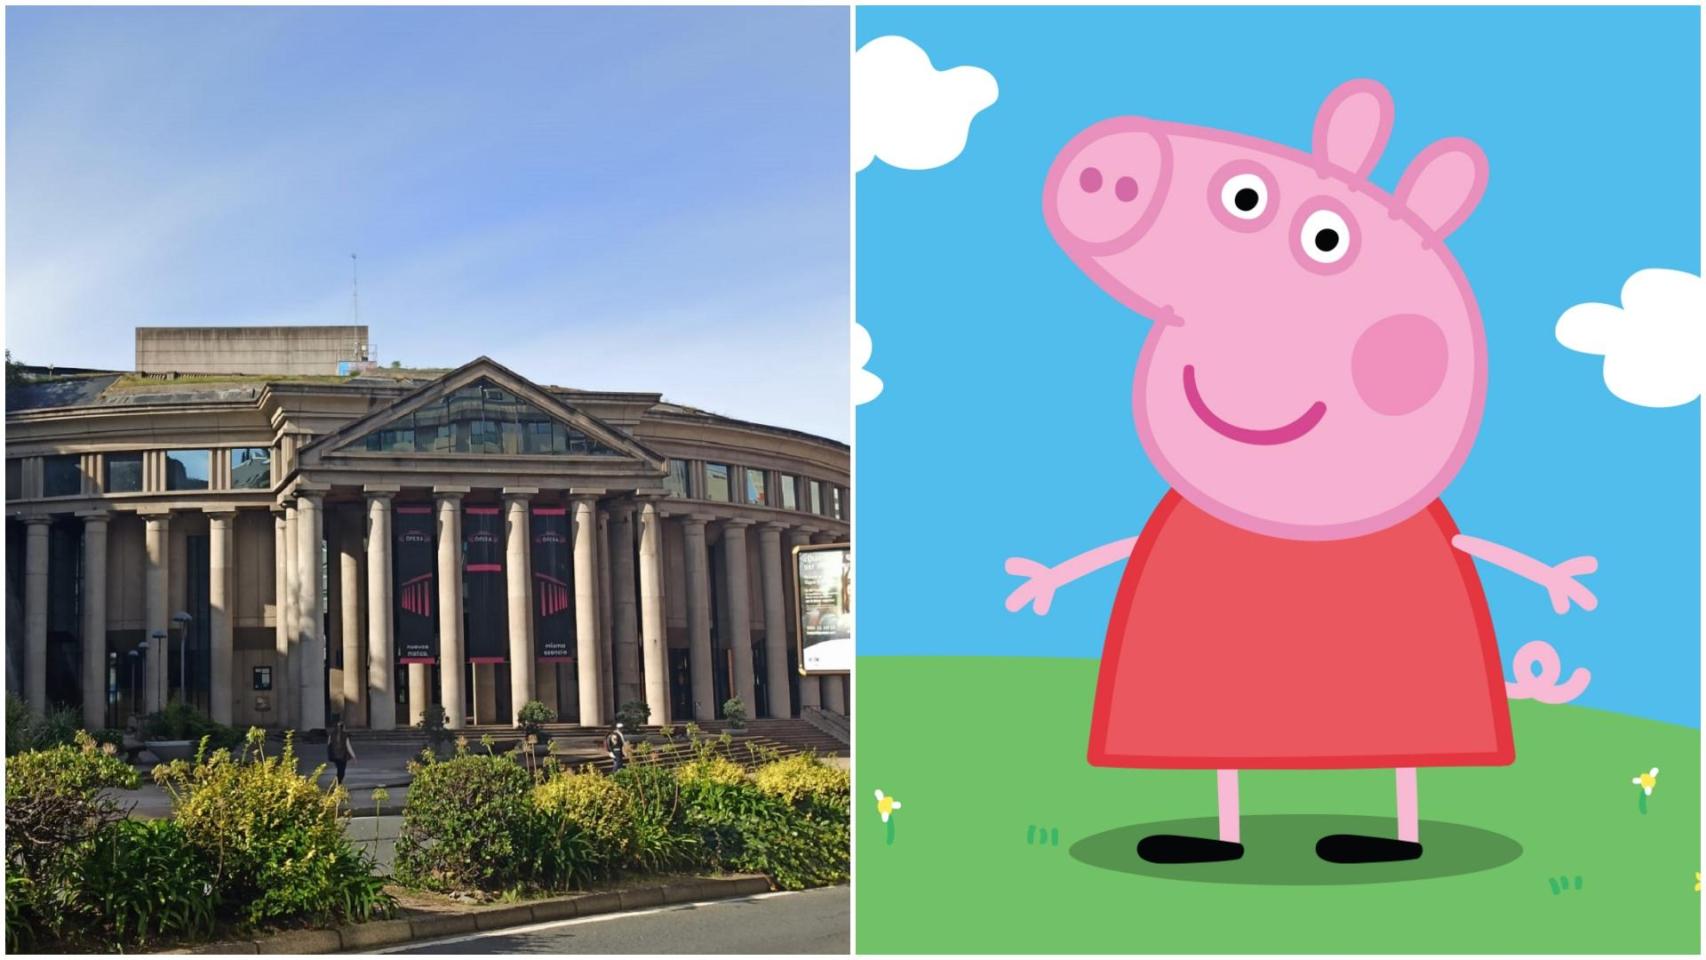 La gira de Peppa Pig visitará A Coruña, única ciudad gallega confirmada por el momento